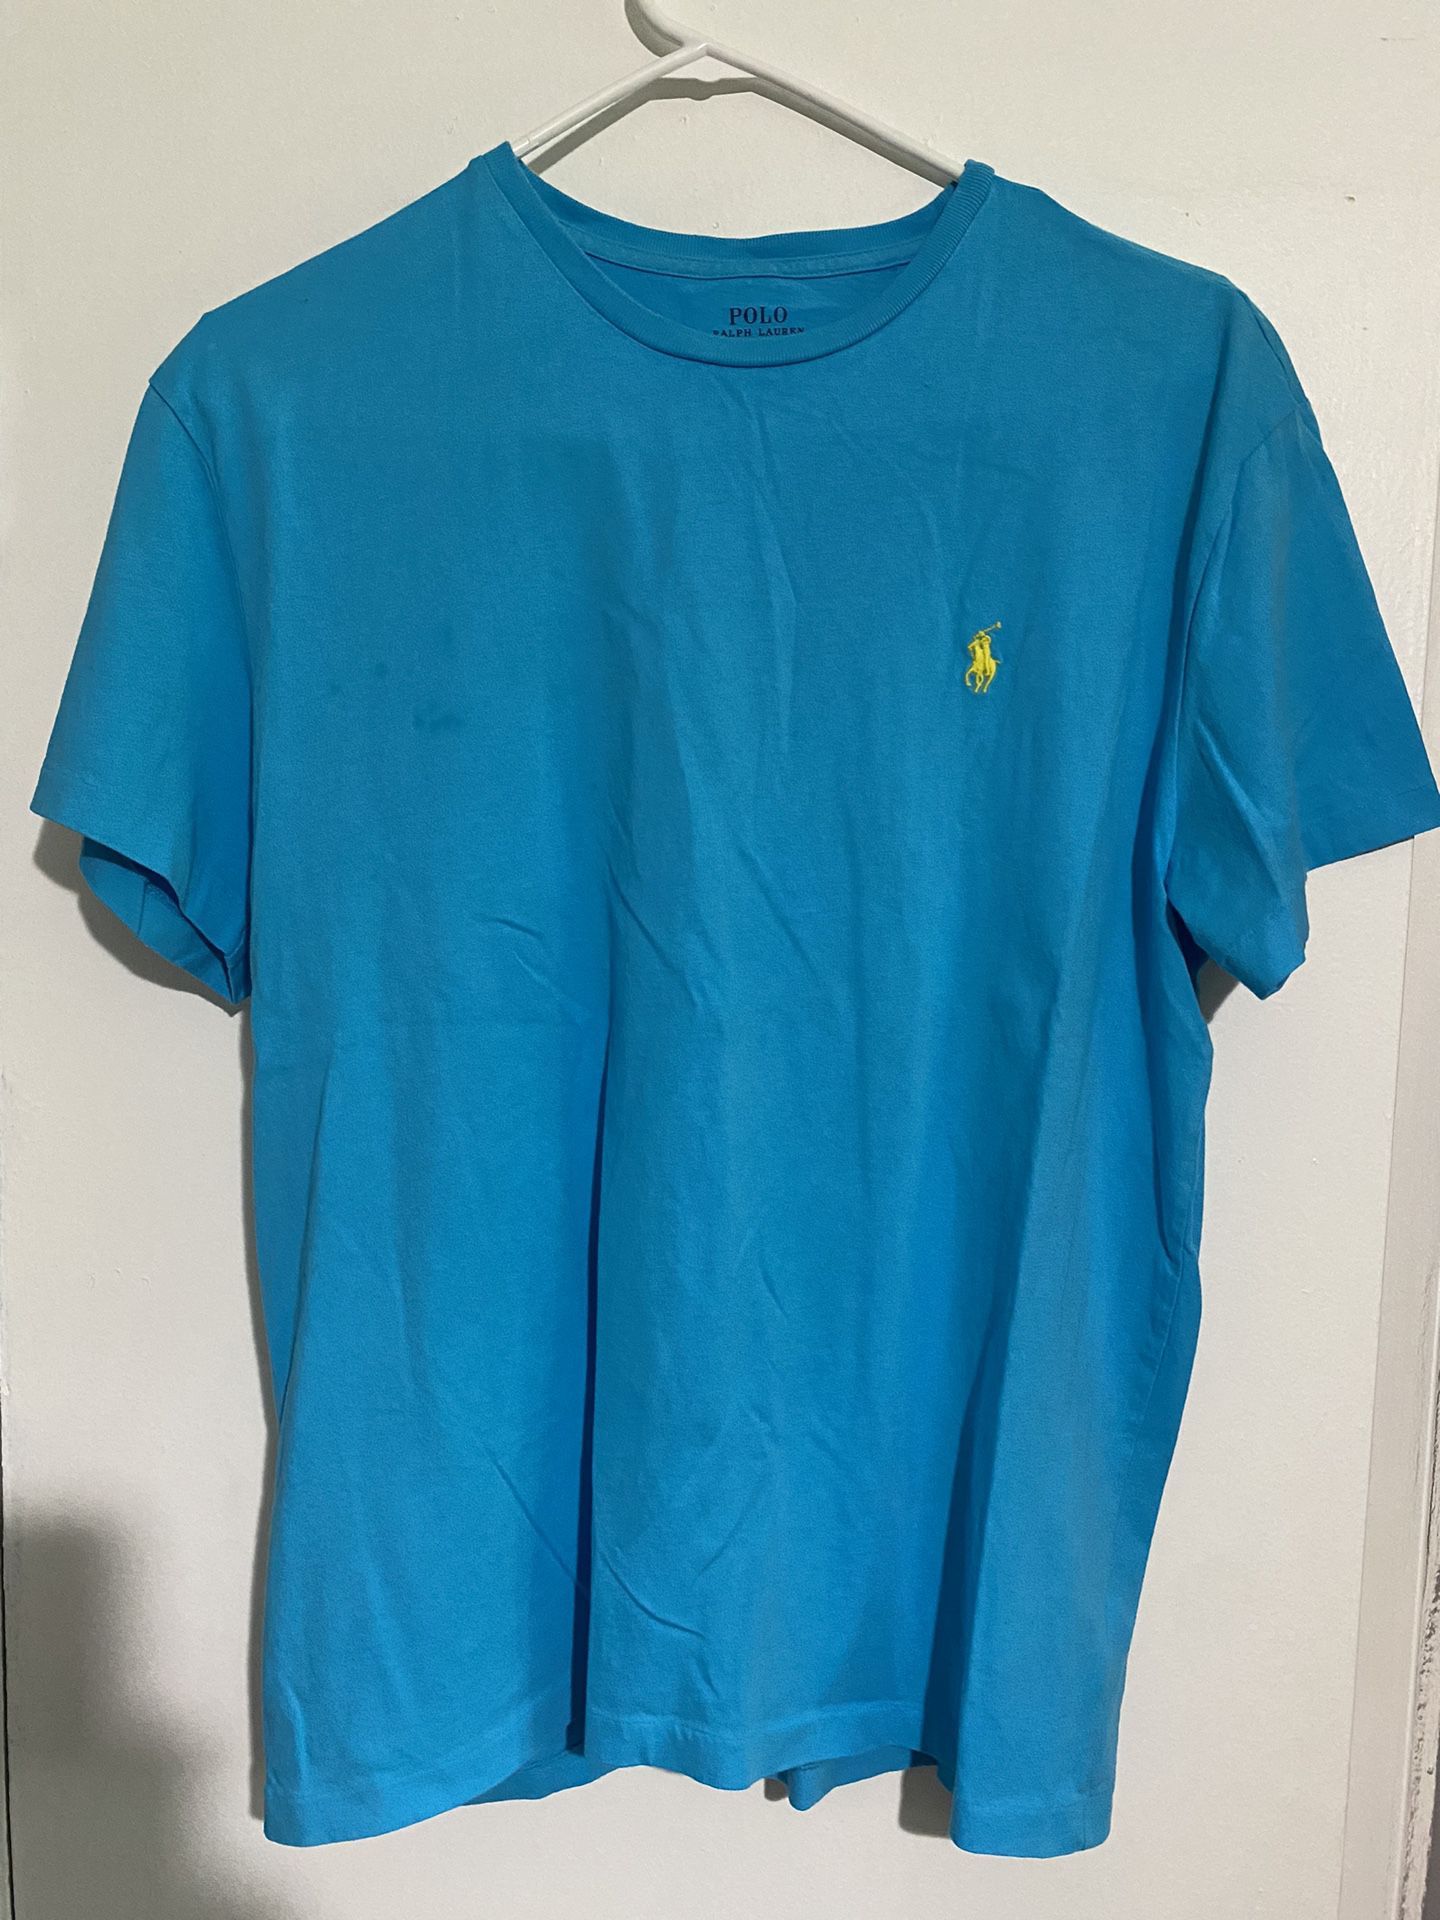 Polo Ralph Lauren Tee Shirt Light Blue Size M